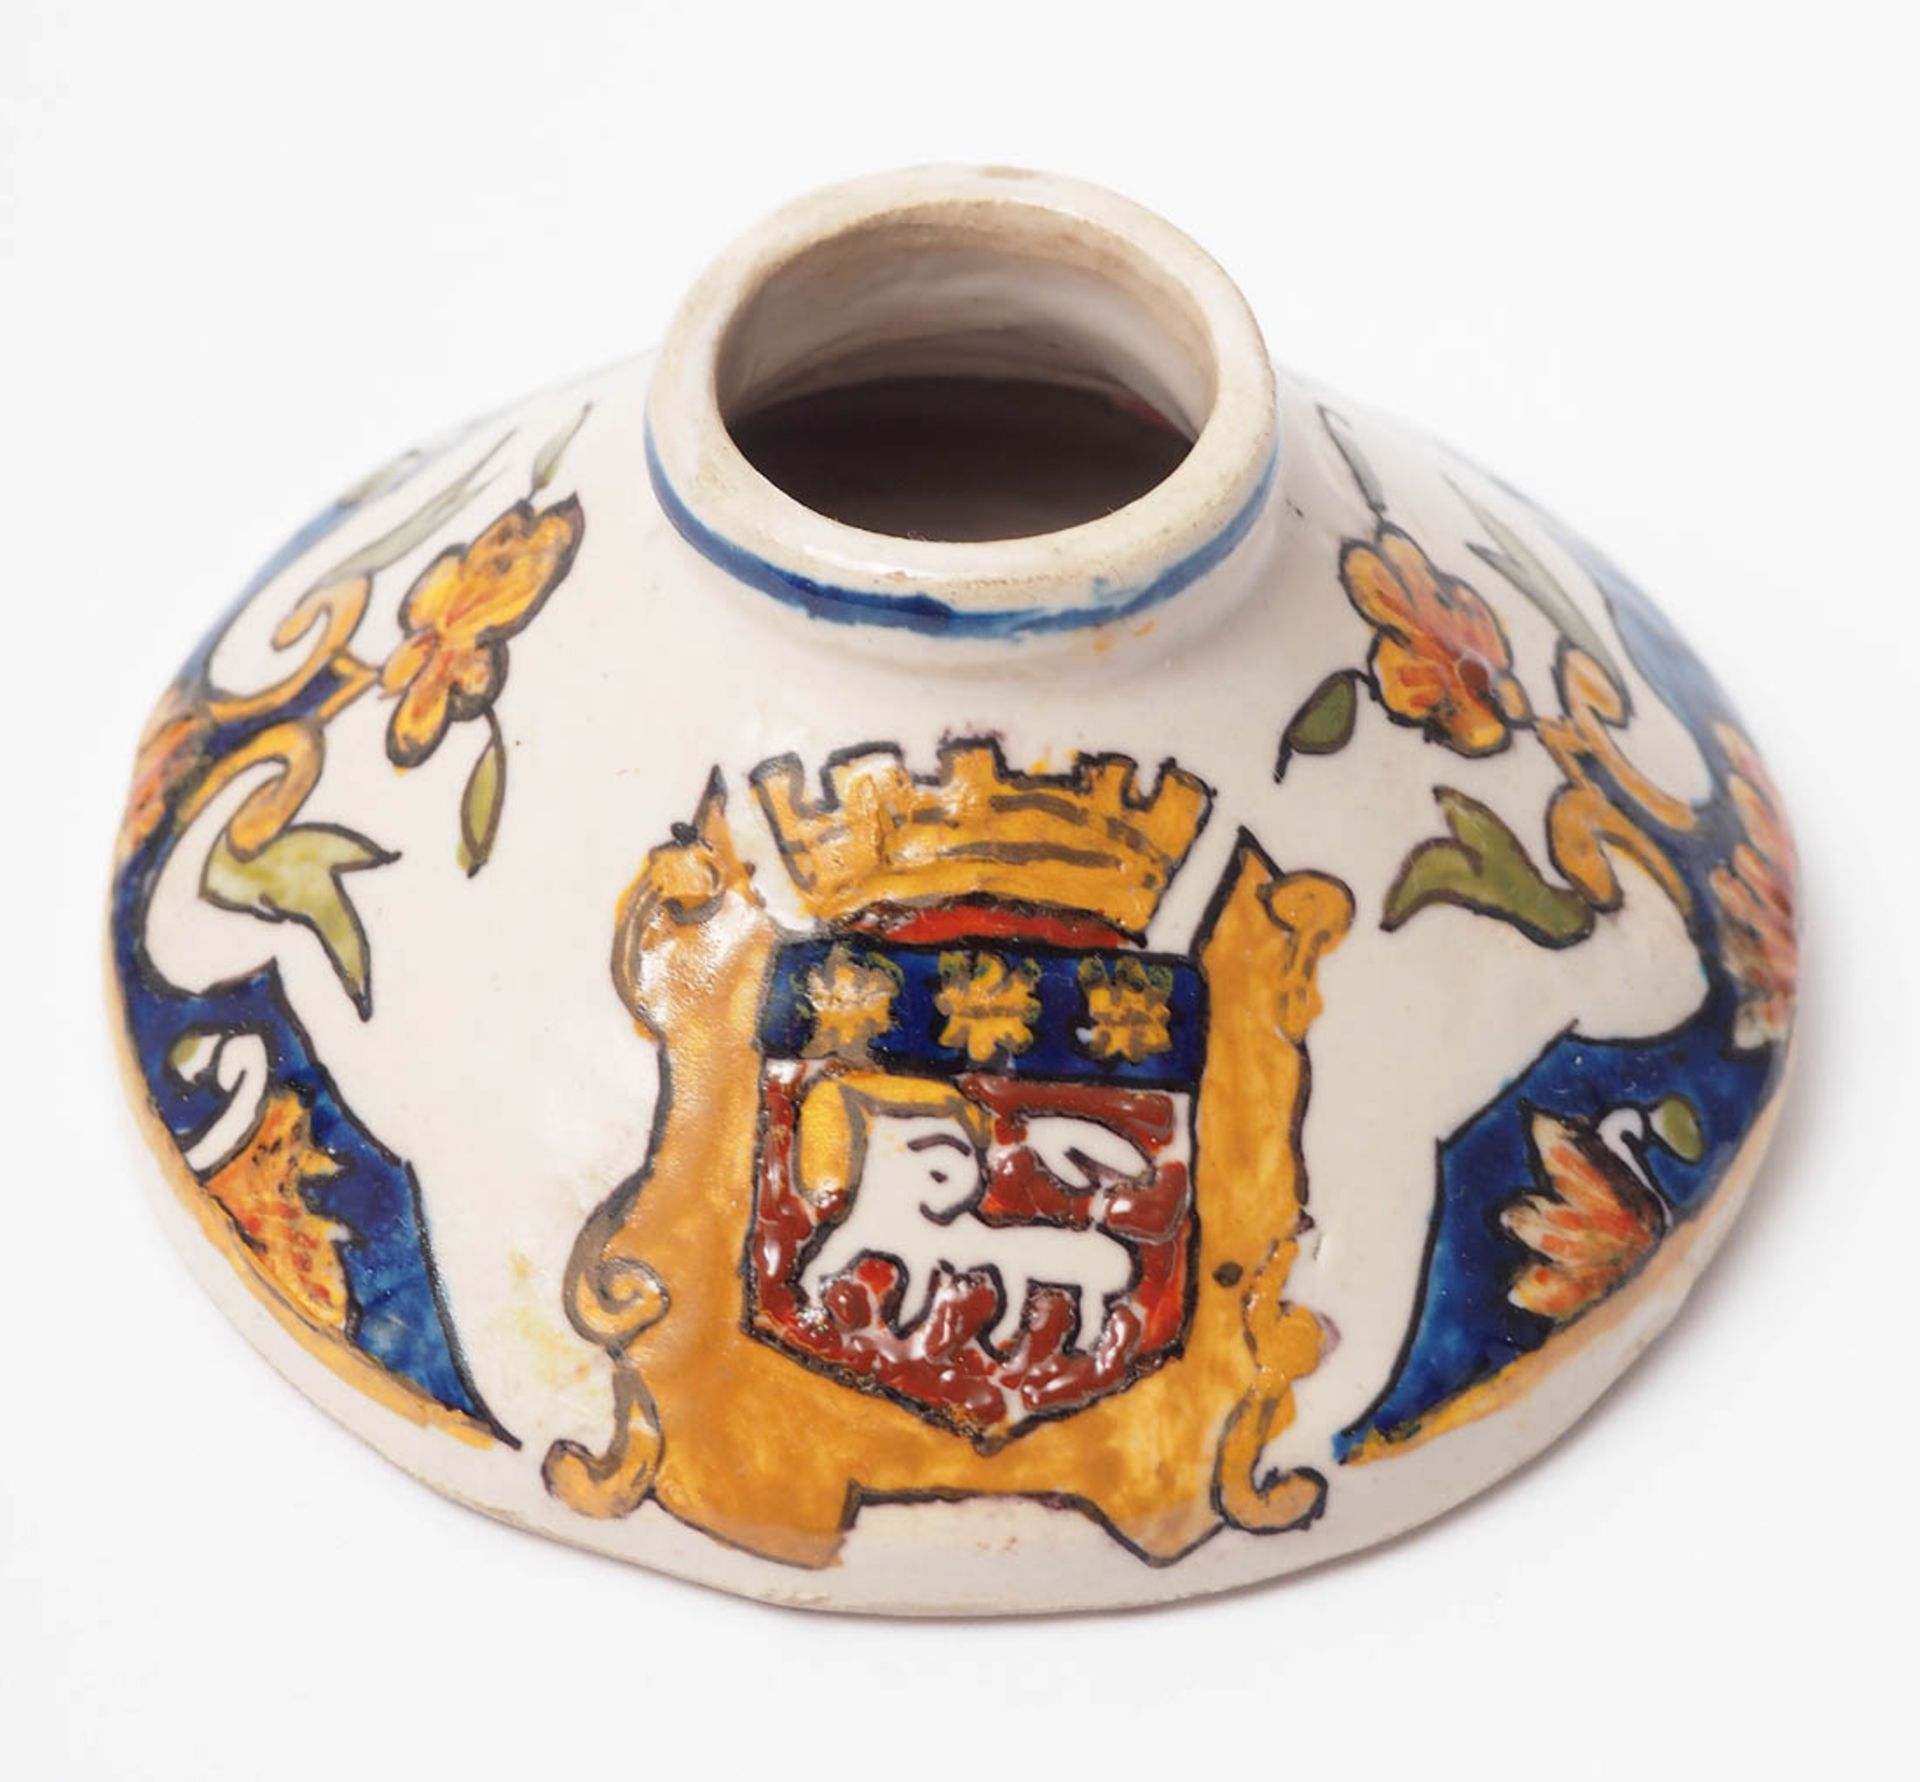 Sechs Teile Keramik, Rouen Wandteller, Schälchen, zwei Kerzenleuchter, kleine Vase und Krug. - Image 6 of 6